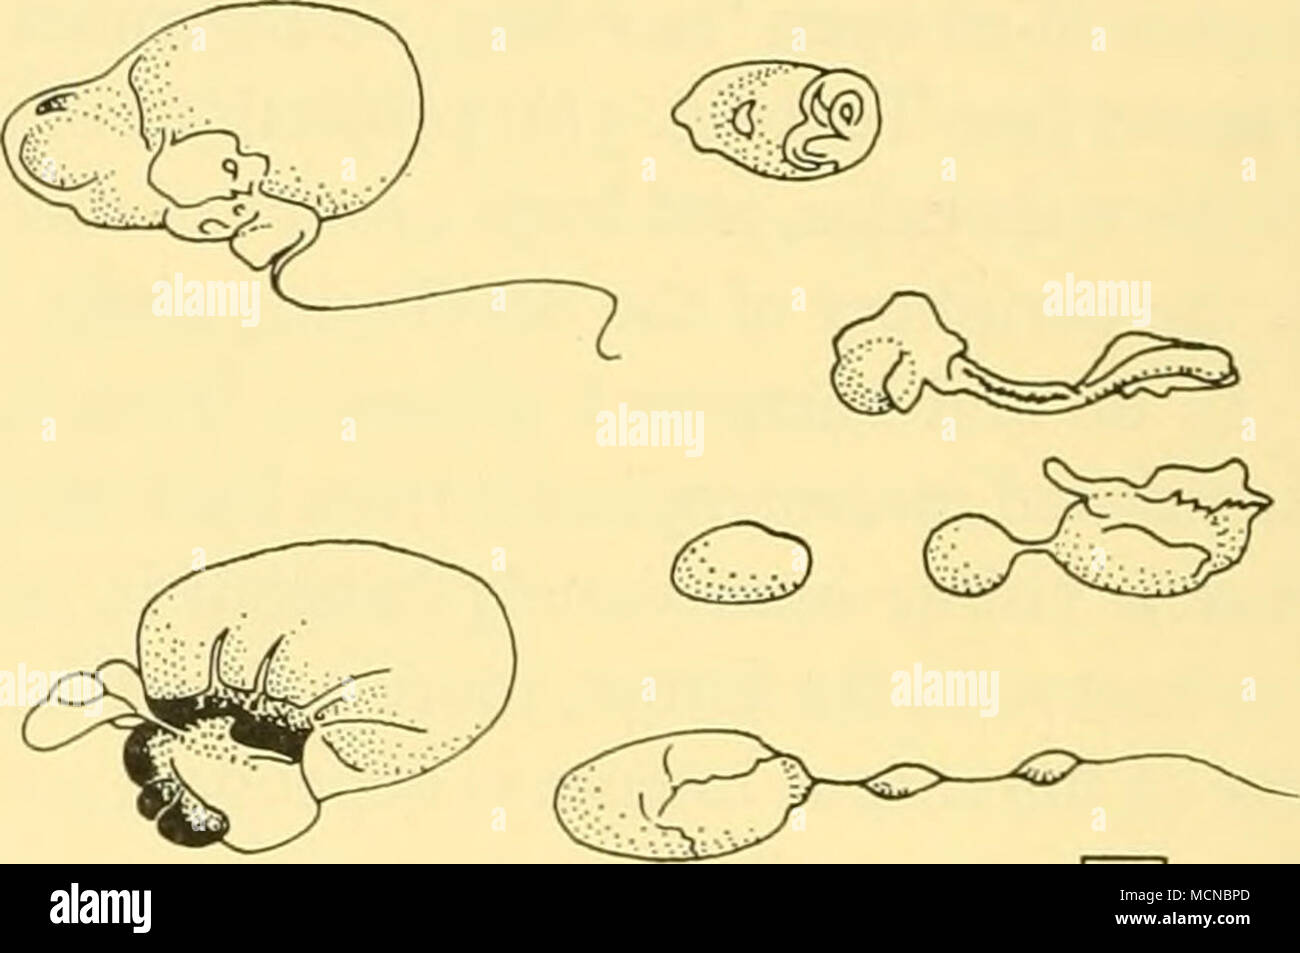 . L cm Text-Bild. 6. Vesikel in uteri von zwei Pubertären Weibchen gefunden. Das Corpus luteum Der ovulation Es gibt Aufzeichnungen von der Durchmesser des Corpus luteum Der ovulation von 59 weiblichen Finnwale. Diese sind in dem vor kurzem Ovulated Klasse von Frauen, die in der Antarktis, die Mehrzahl außerhalb der üblichen Konzeption Zeitraum für die Arten (siehe S. 450). Sie können als Frauen, denen ein scheinbar normal aktiven Corpus luteum in den Eierstöcken charakterisiert werden, in dem aber eine intensive Suche der Gebärmutter konnte ein Fötus zu offenbaren. Prüfung der mittleren Größe der größte Follikel in dieser Gruppe (s. Stockfoto